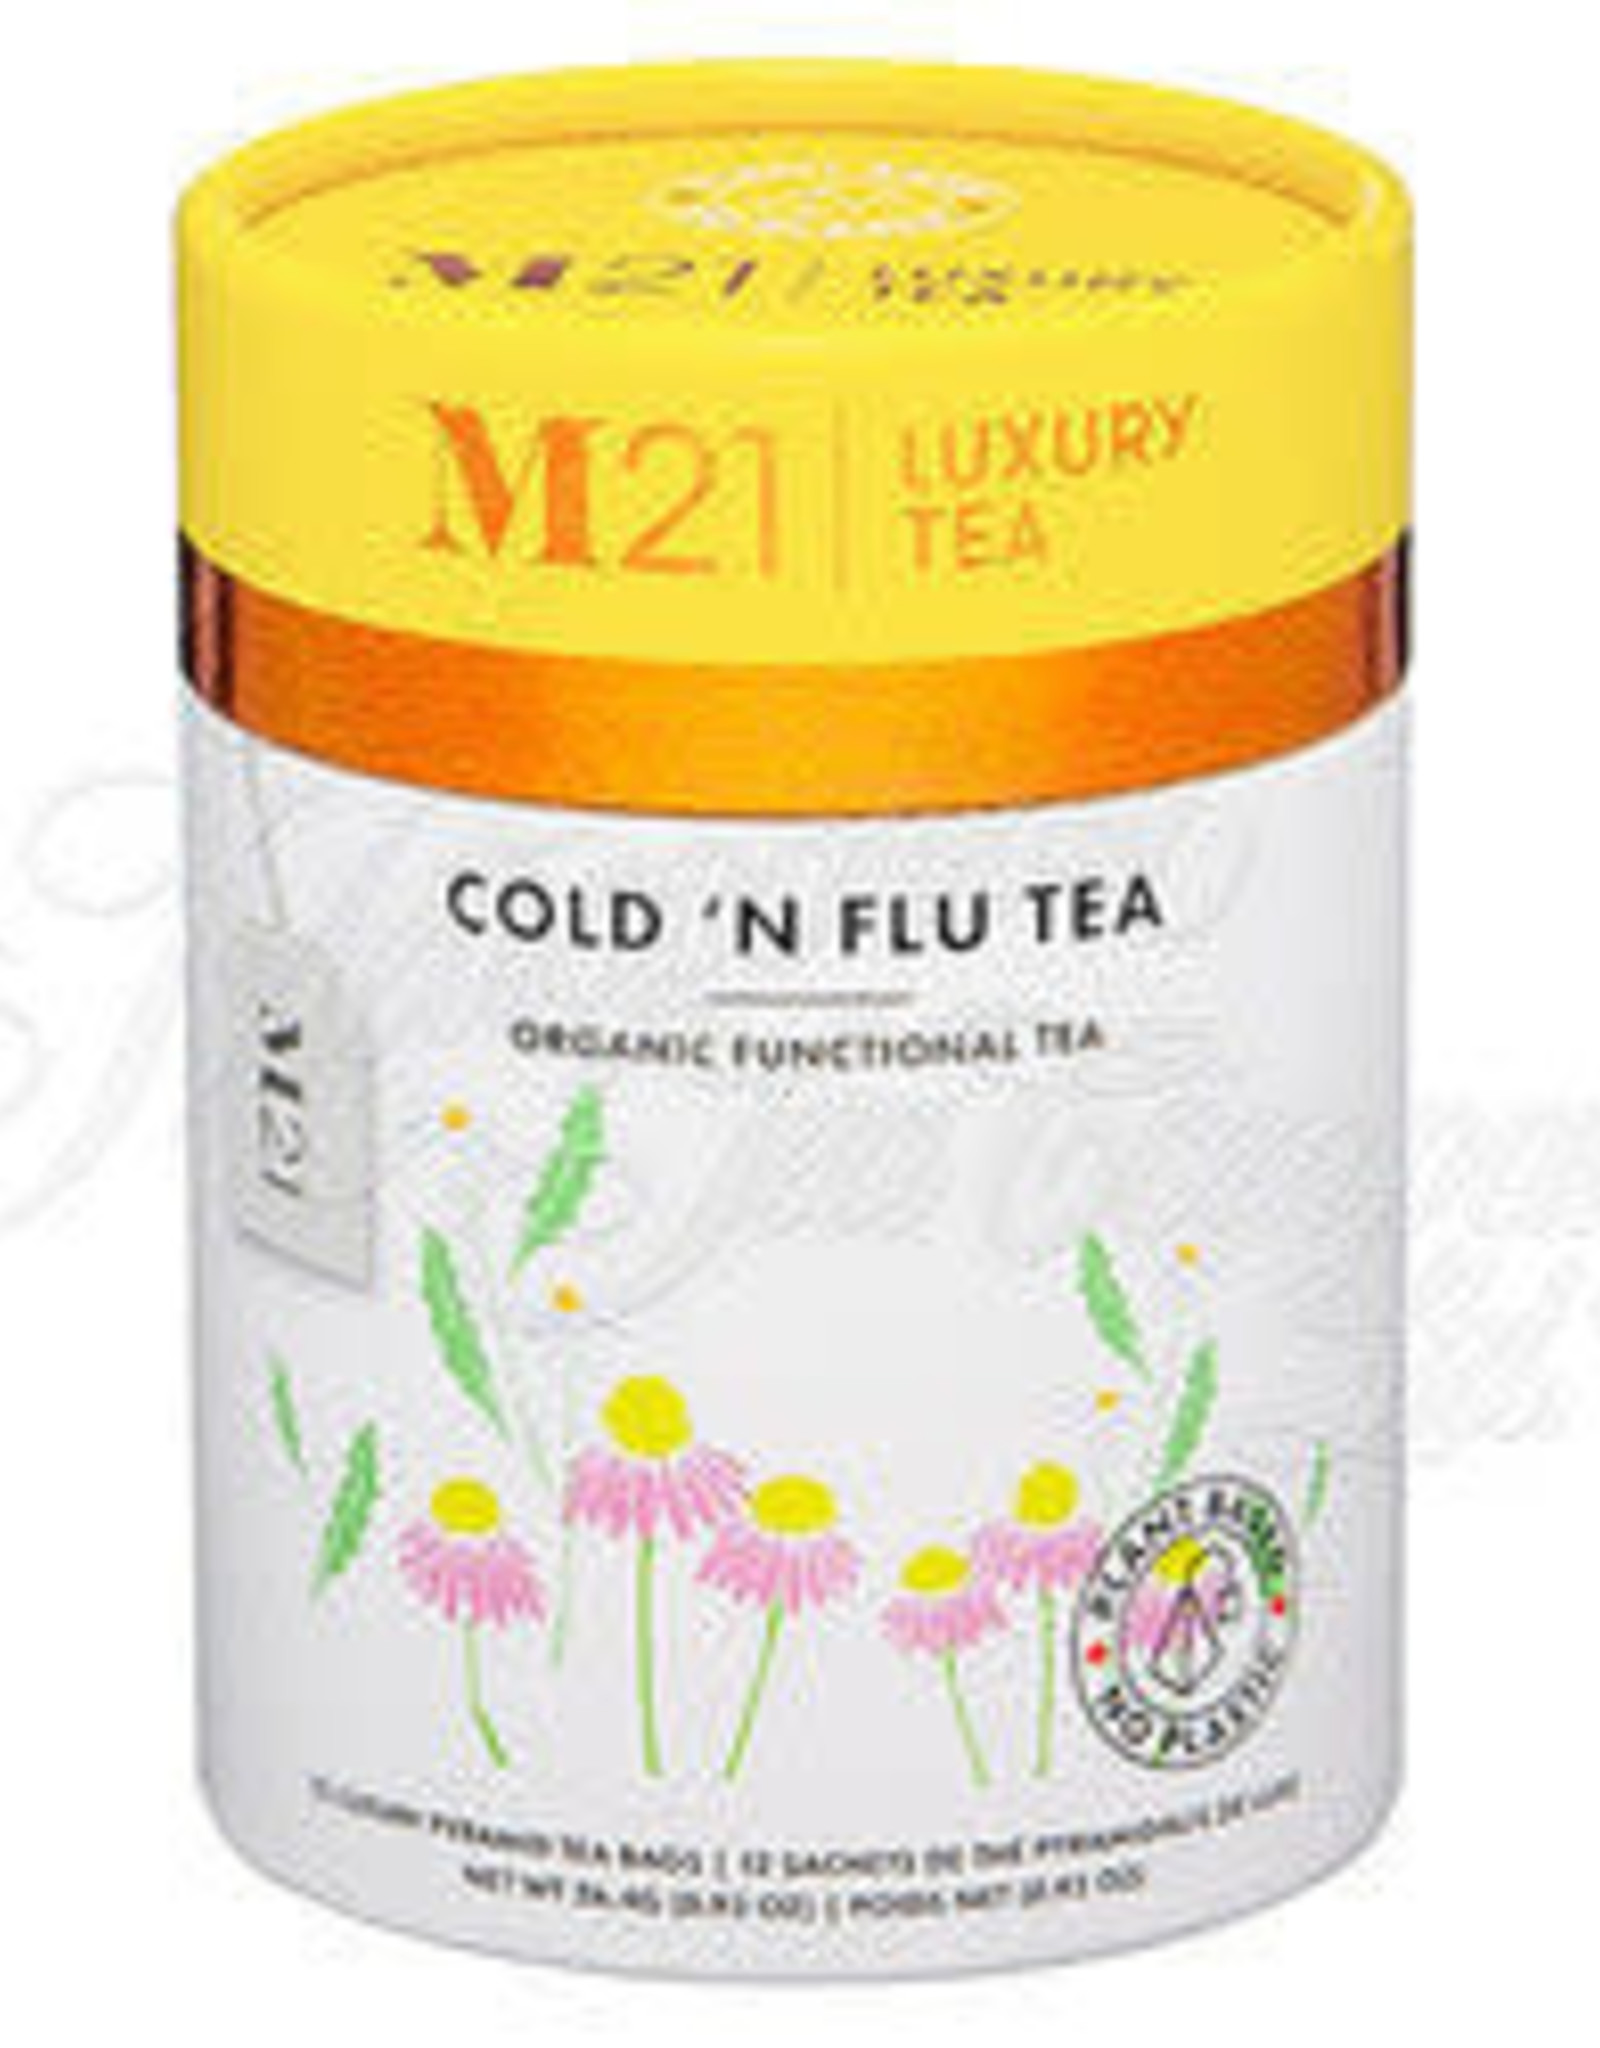 M21 Tea: Cold 'N Flu Tea